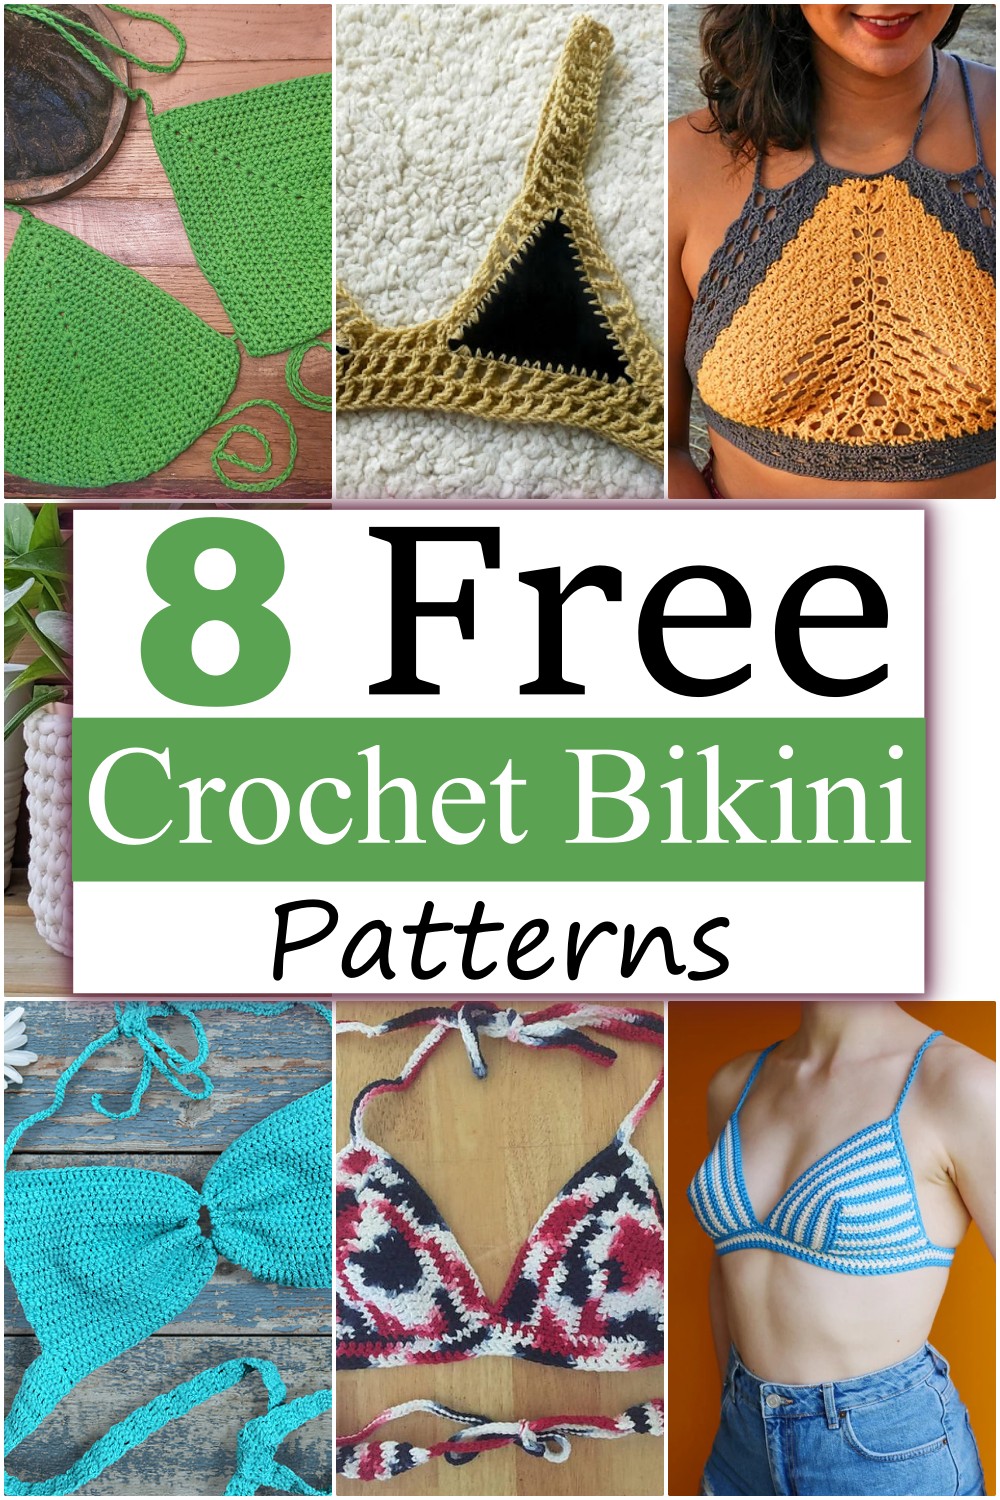 Crochet Bikini Patterns